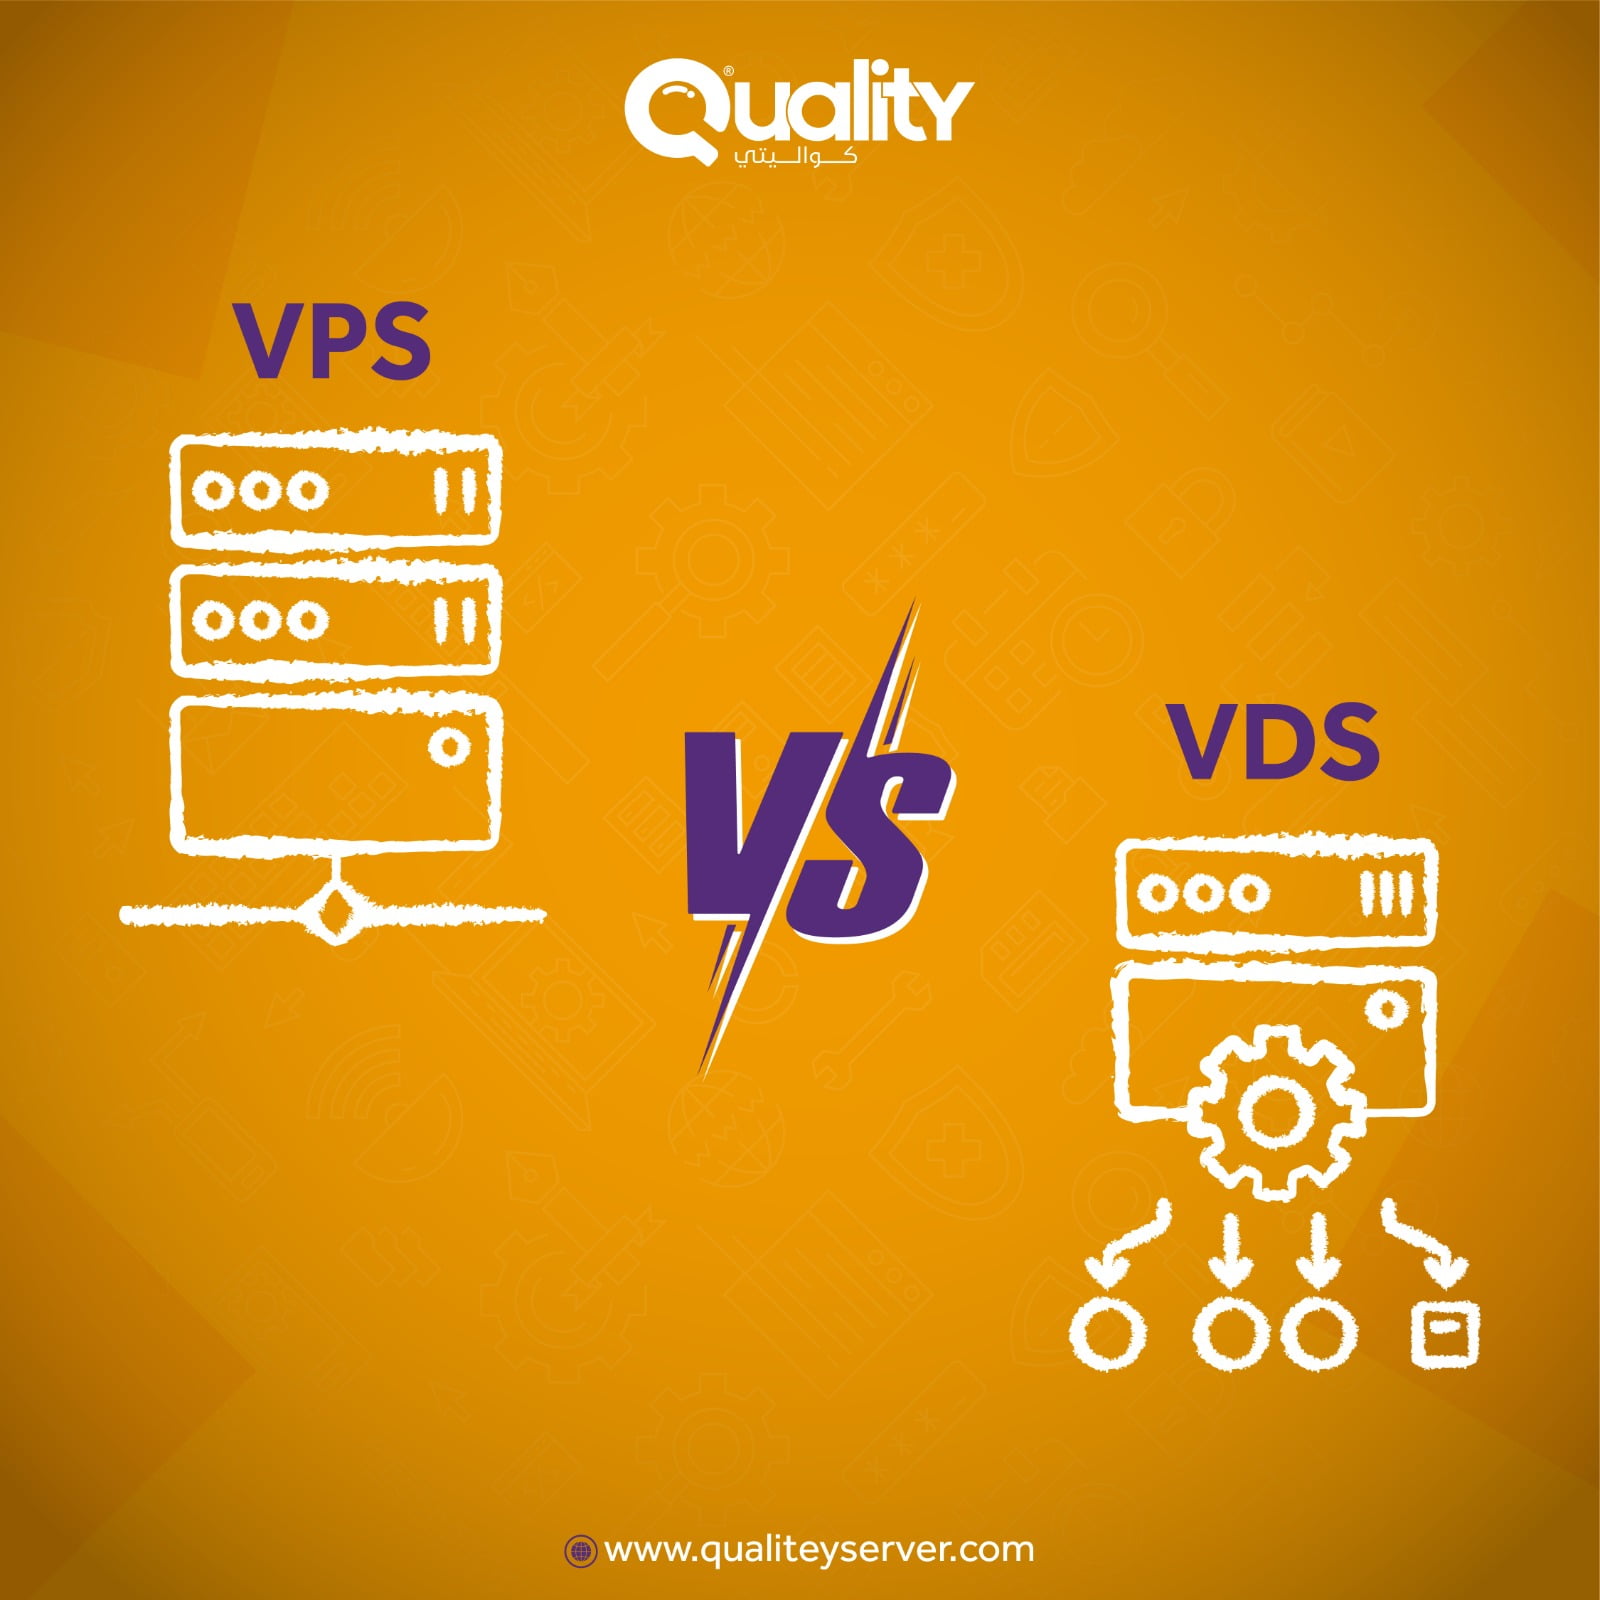 السيرفرات المشتركة VPS والسيرفرات الخاصة VDS والفرق بينهما